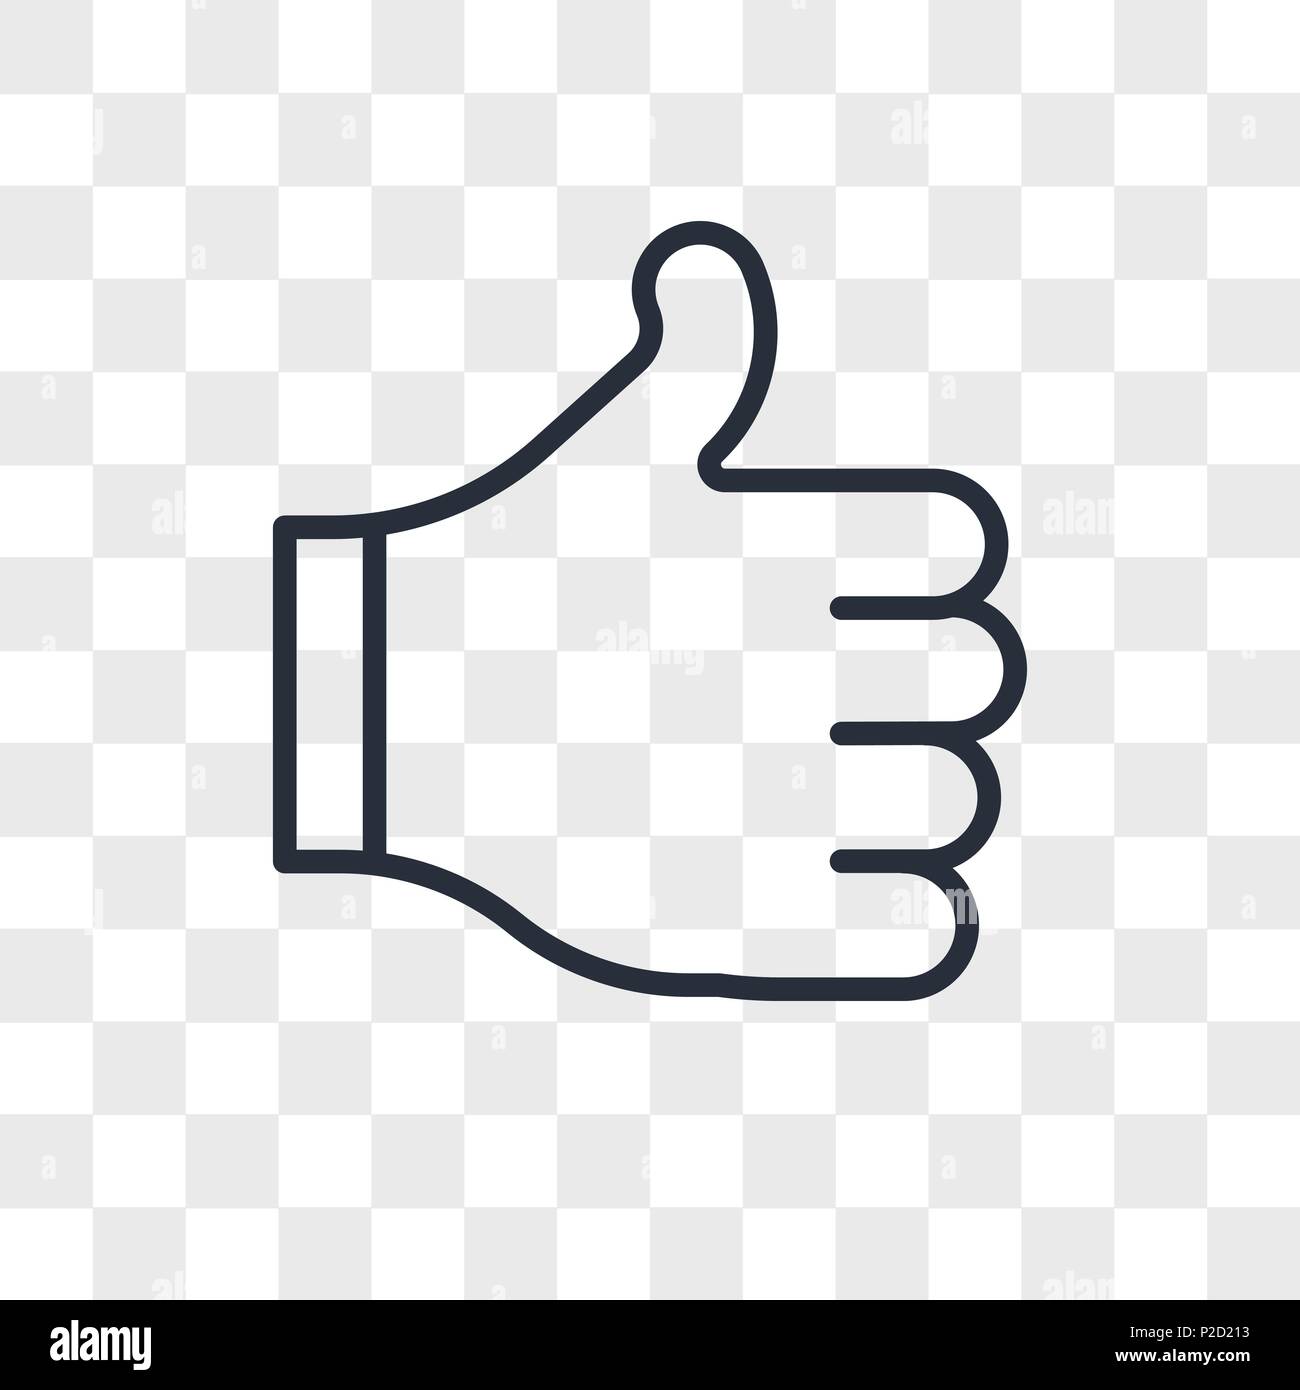 Thumbs up icona vettore isolato su sfondo trasparente, pollice in alto  concetto del logo Immagine e Vettoriale - Alamy